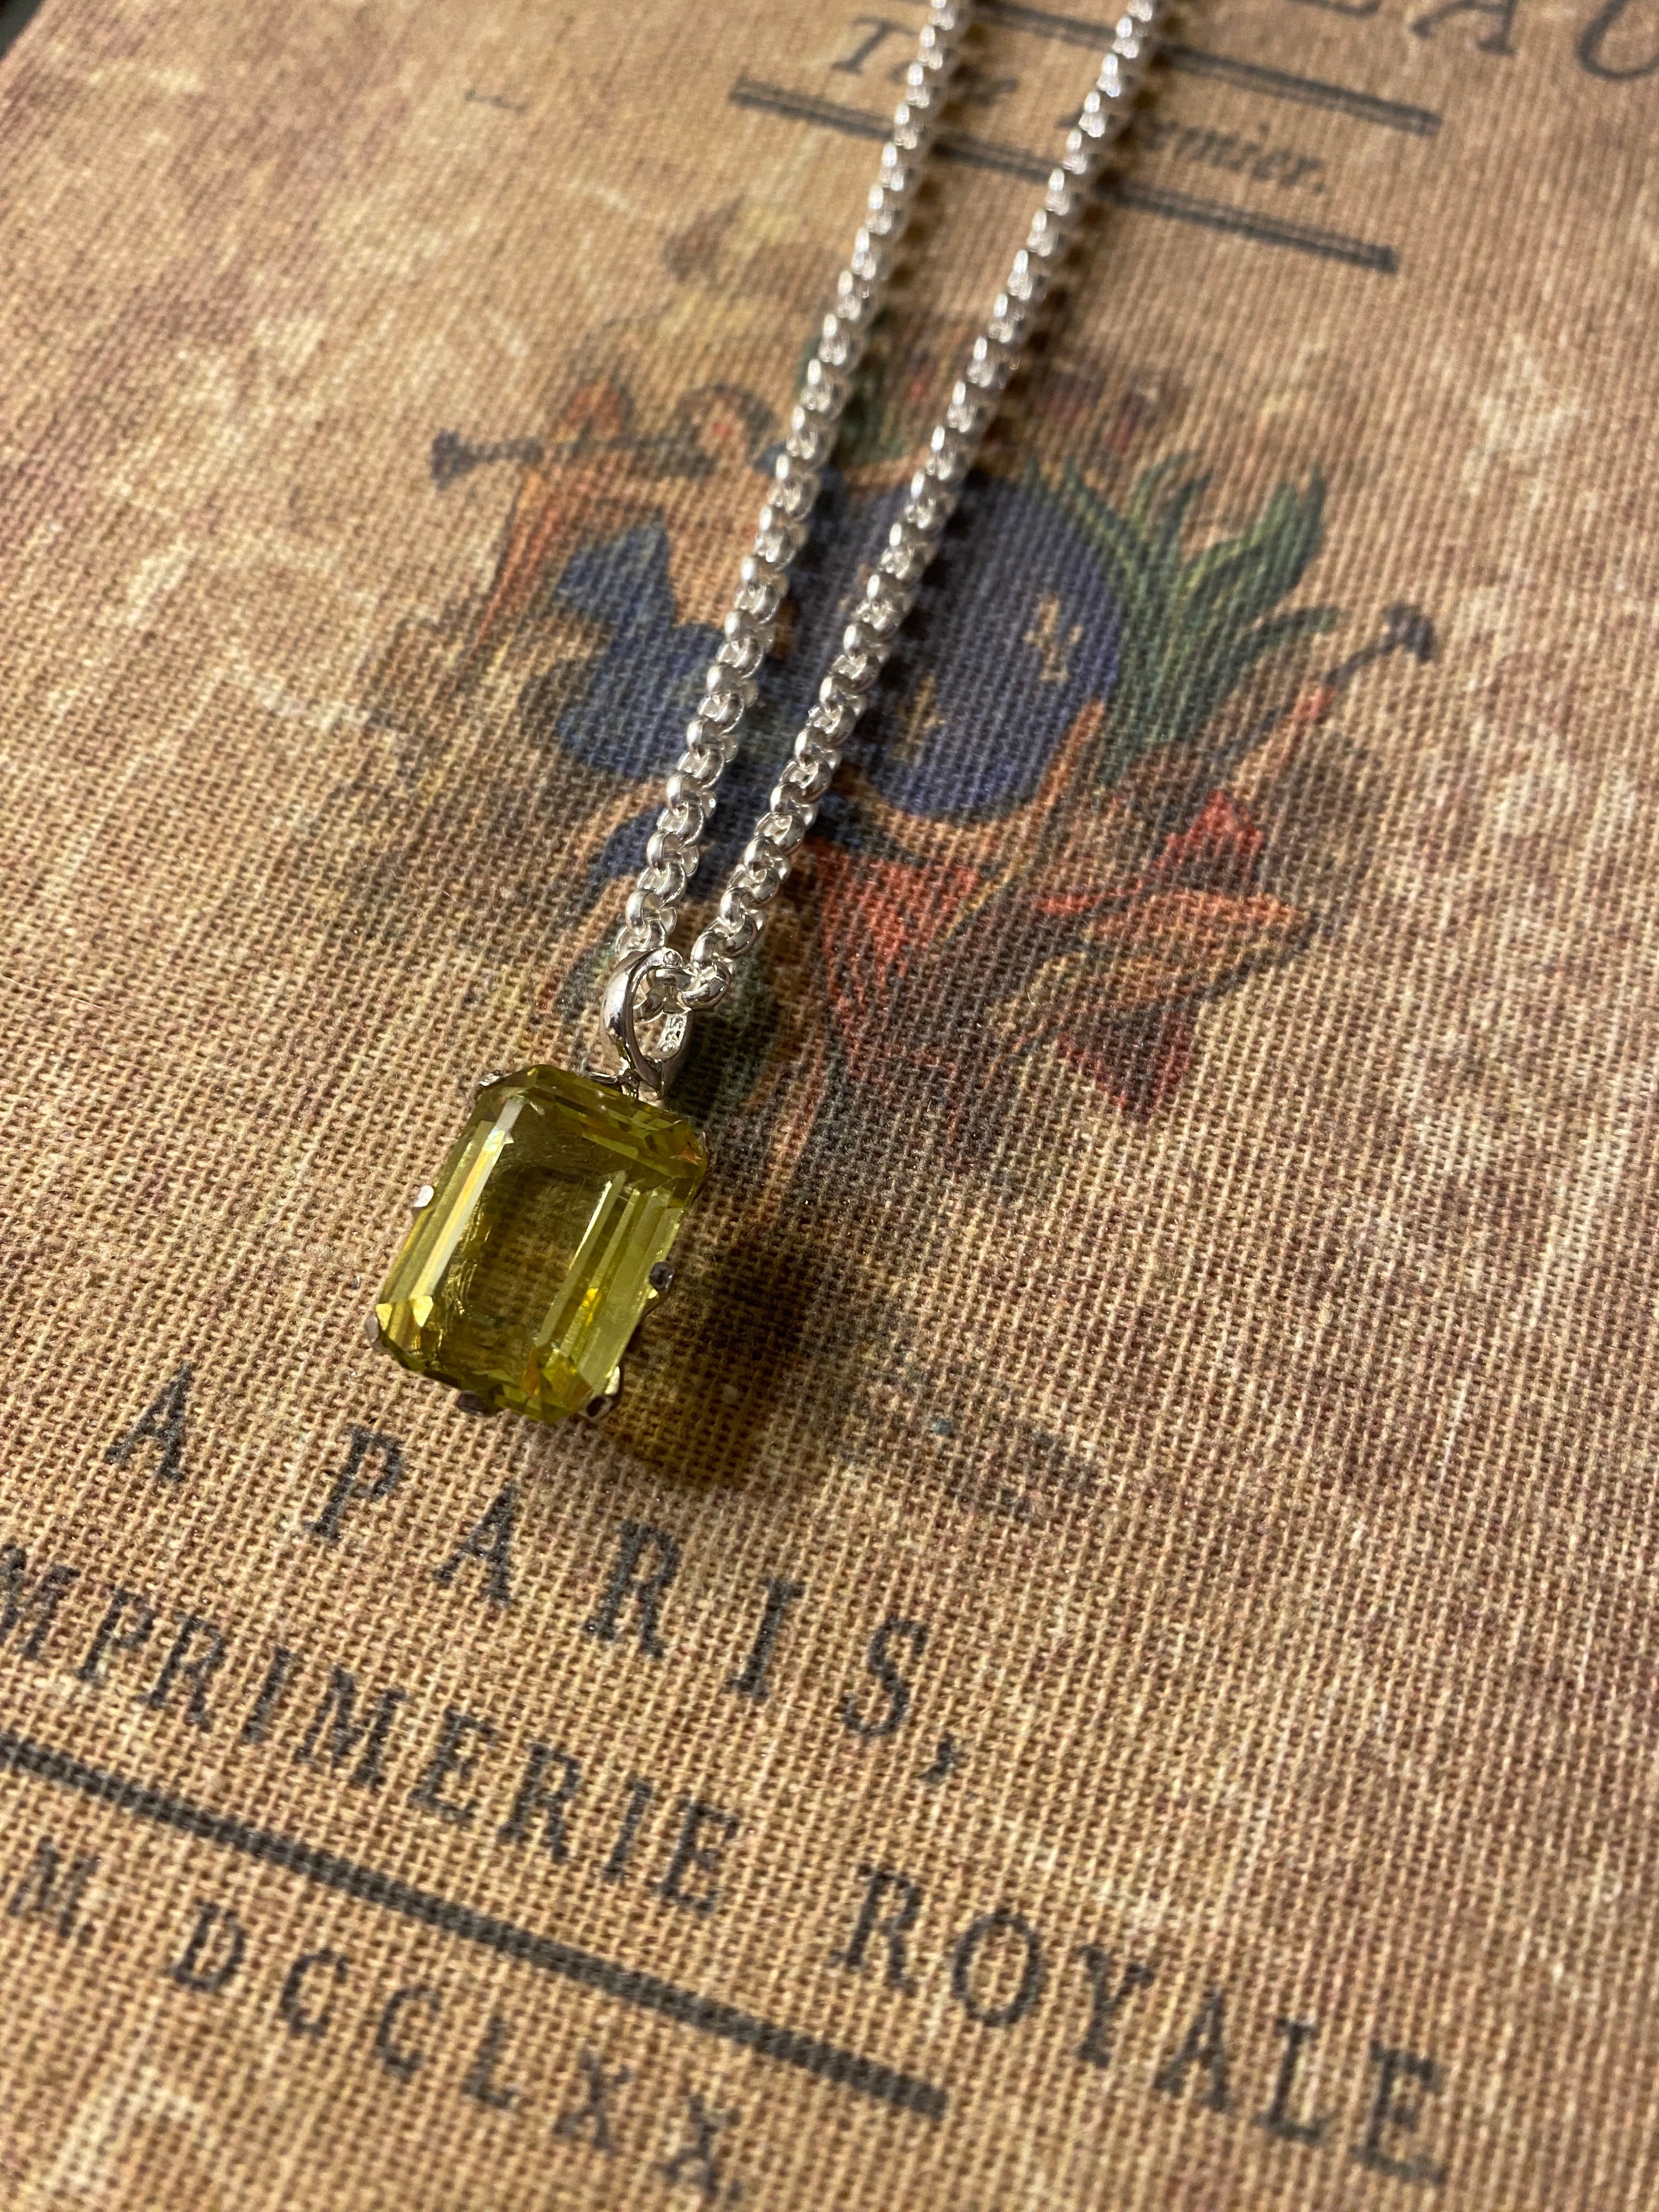 Cocktail Necklace with Emerald Cut Lemon Quartz Pendant